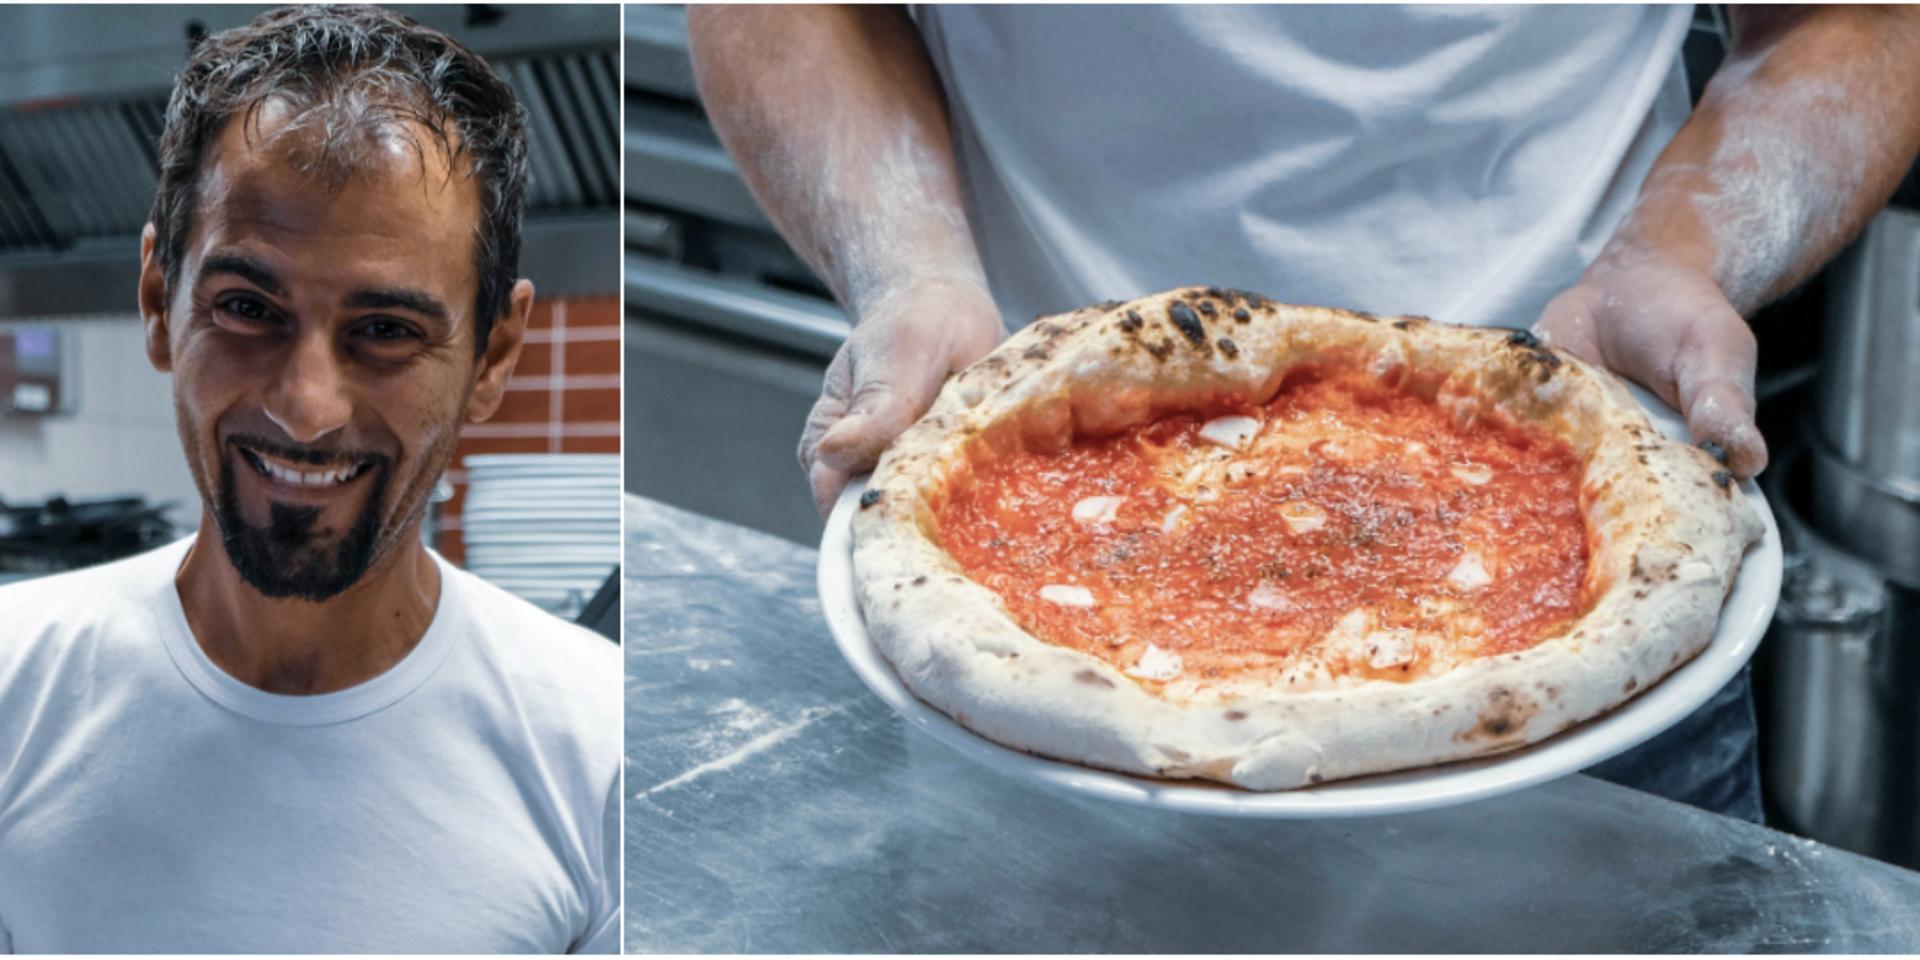 Emanuele Malgioglio bakar pizzor på Trattoria 21 i Gamlestaden, och har coachat bland annat Bellora och BOV